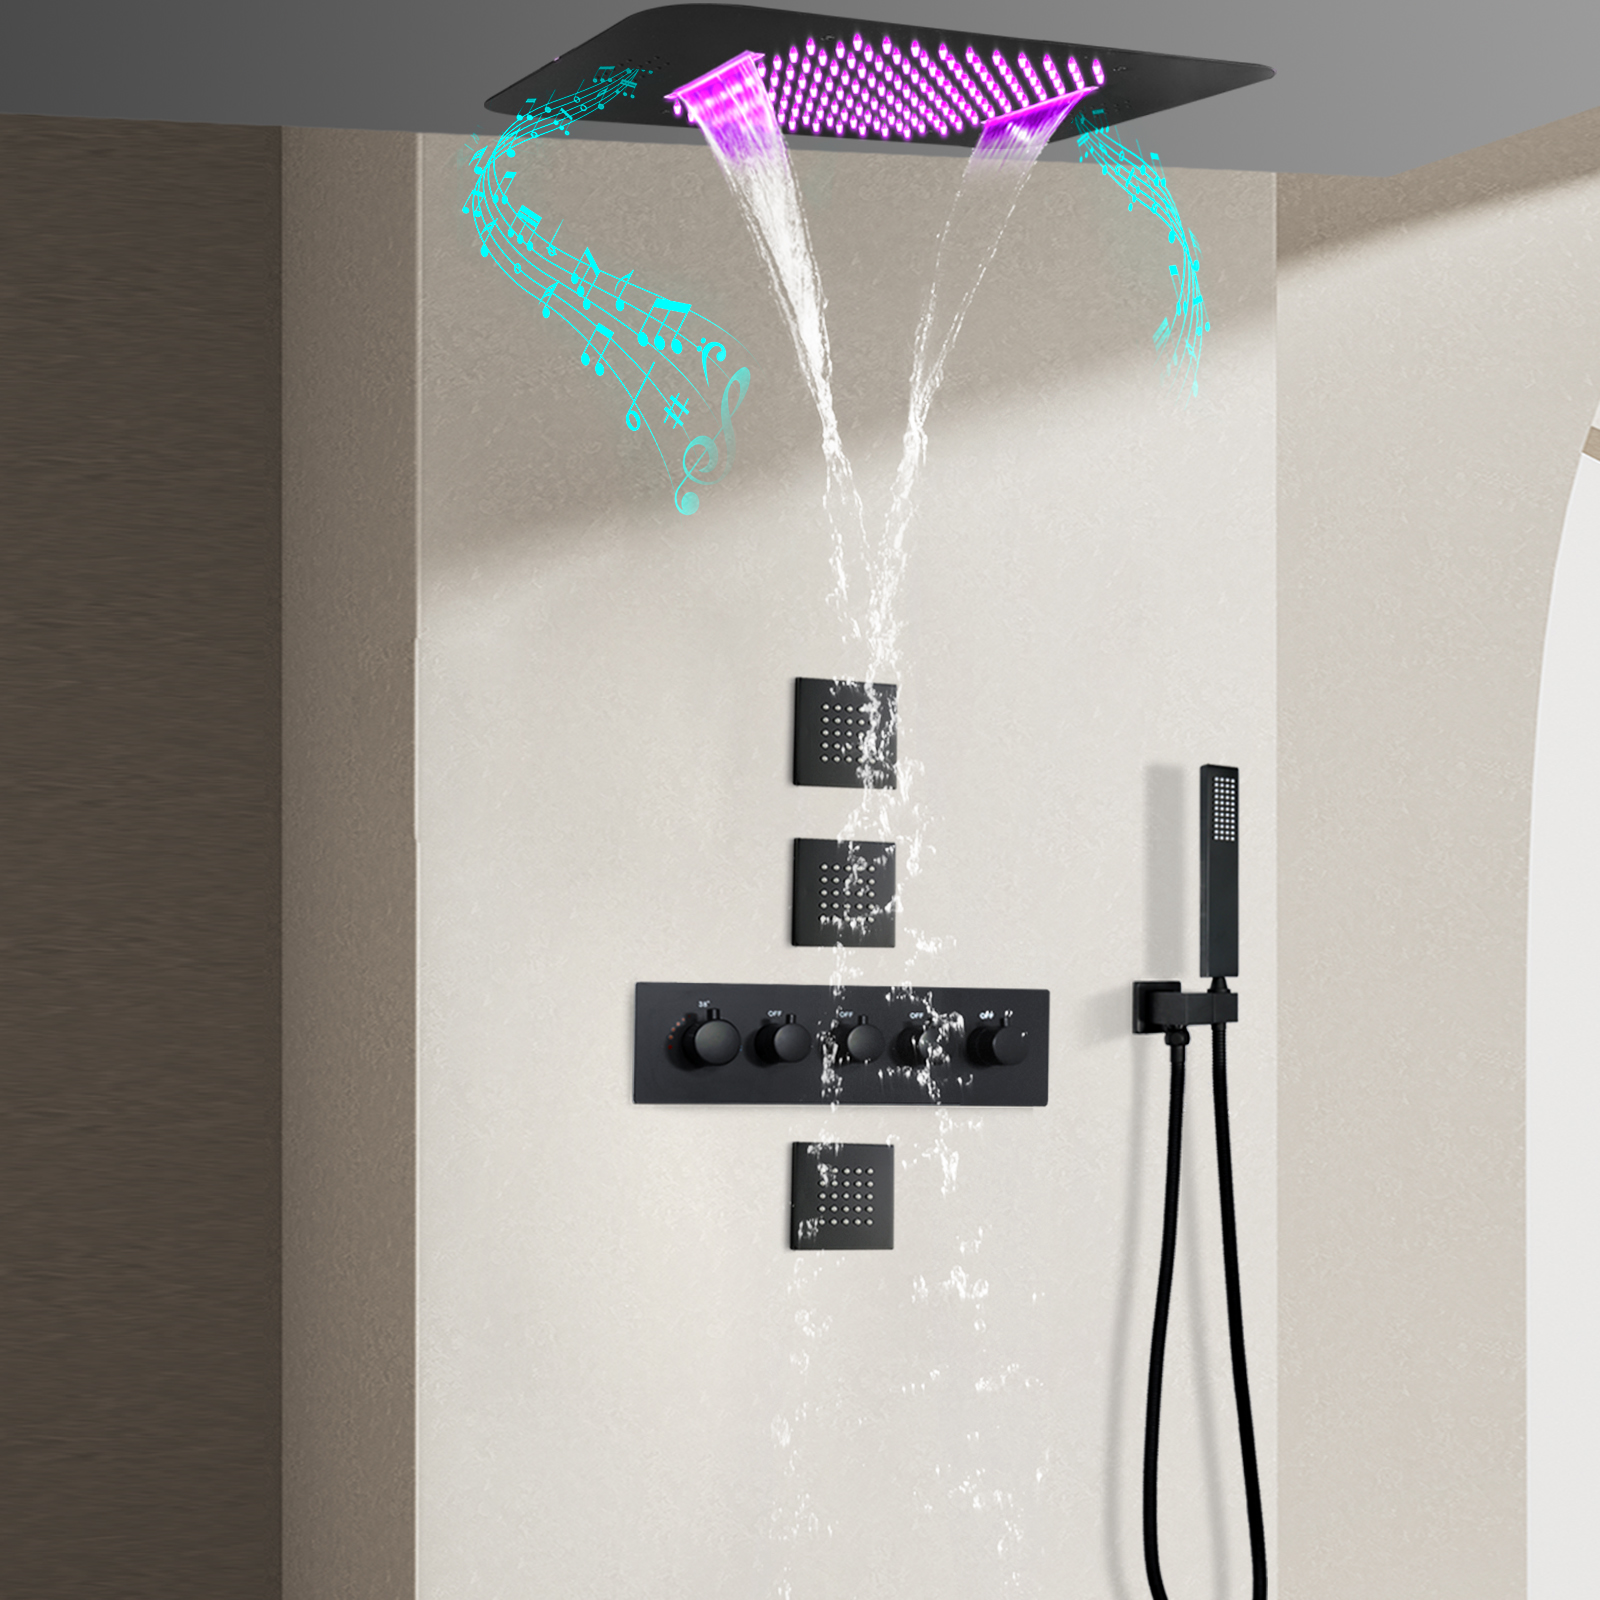 مجموعة دش LED متعددة الوظائف لحوض الاستحمام بالحرارة من Black Music مع دش يدوي